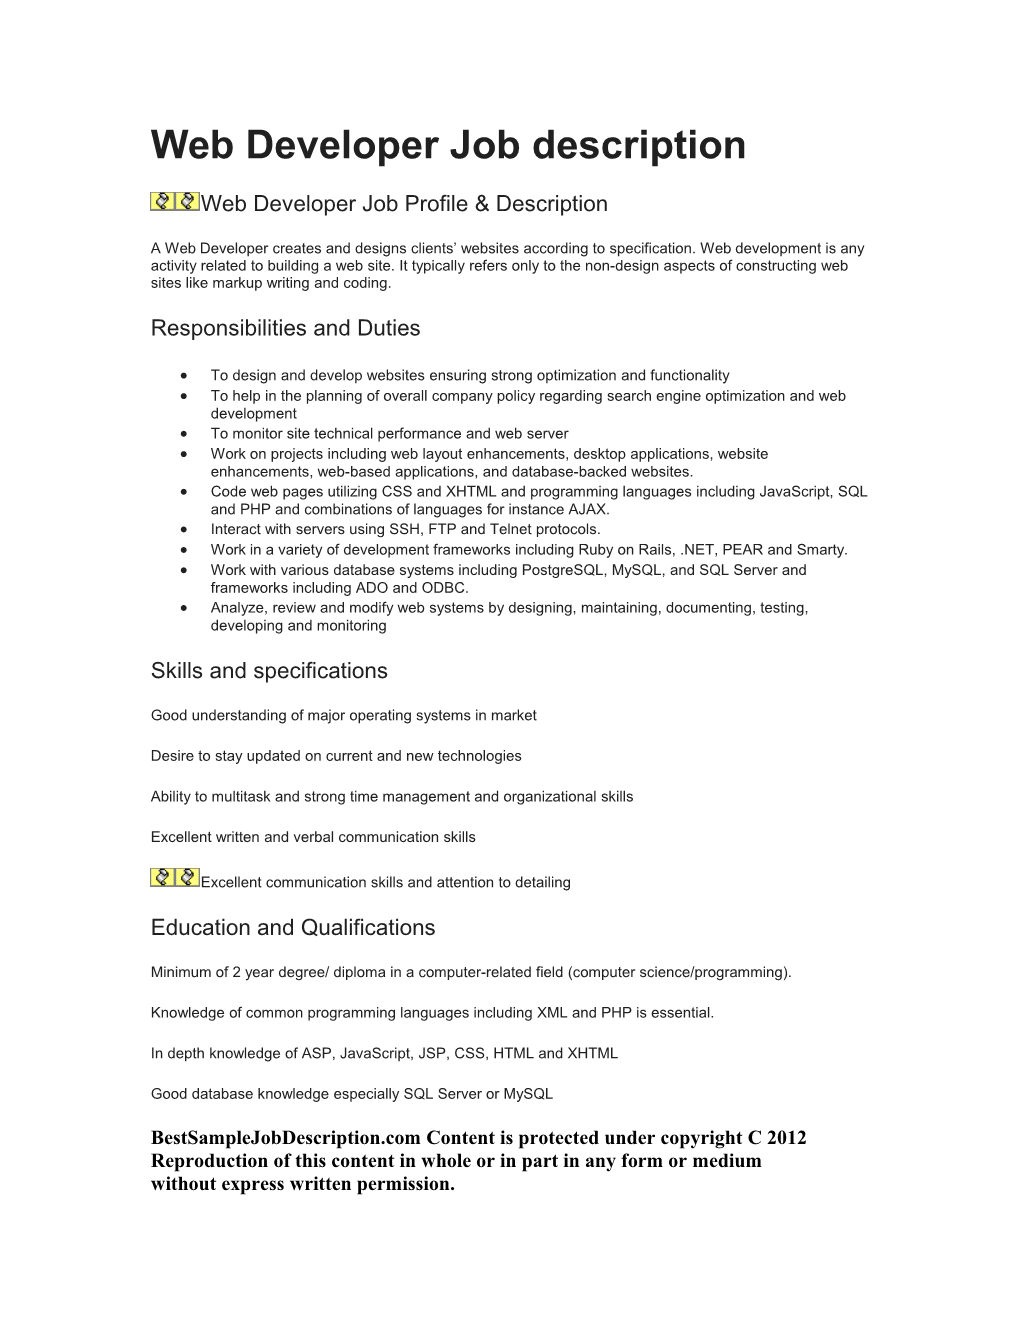 Web Developer Job Description